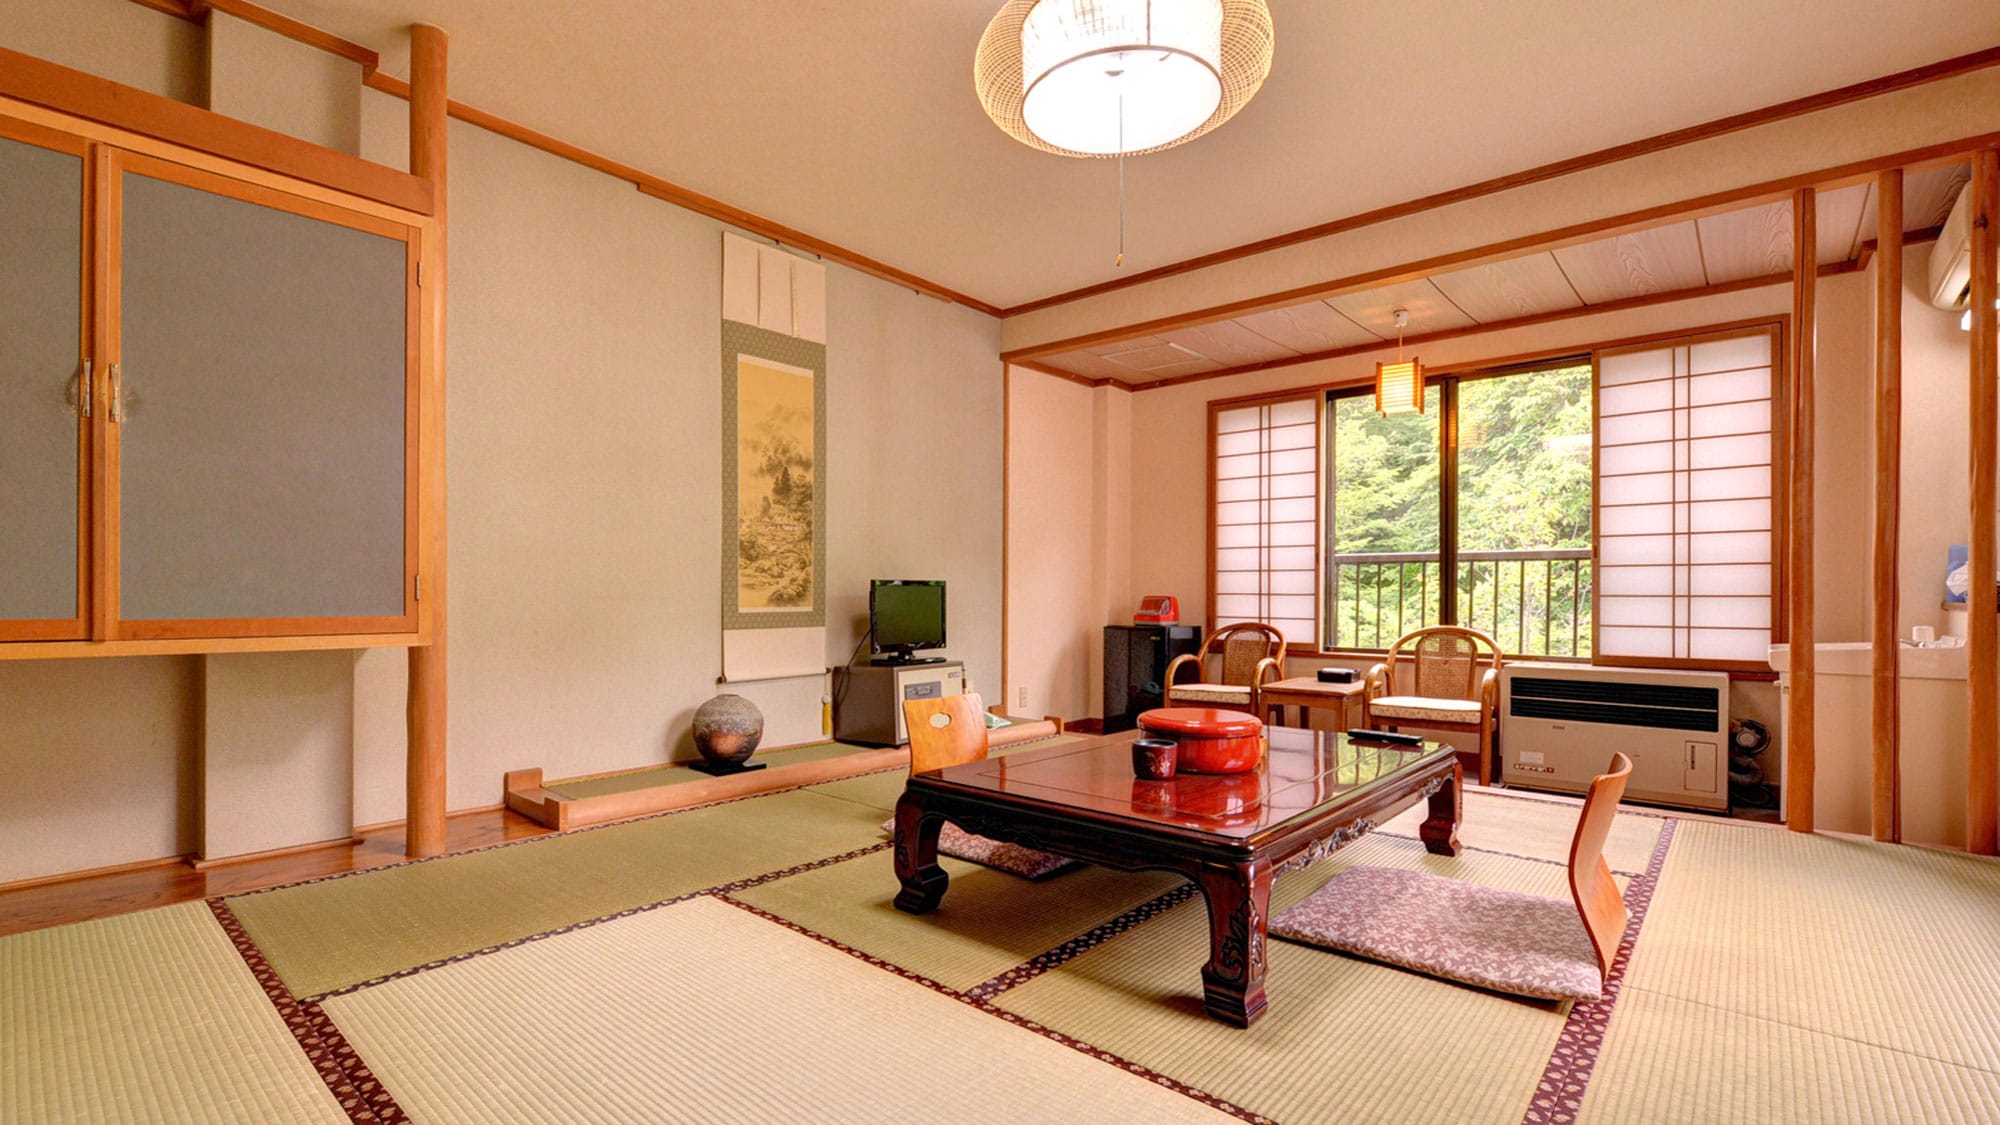 * [客房示例] 日式房间 10 张榻榻米。享受远离日常生活的“空间”假期。